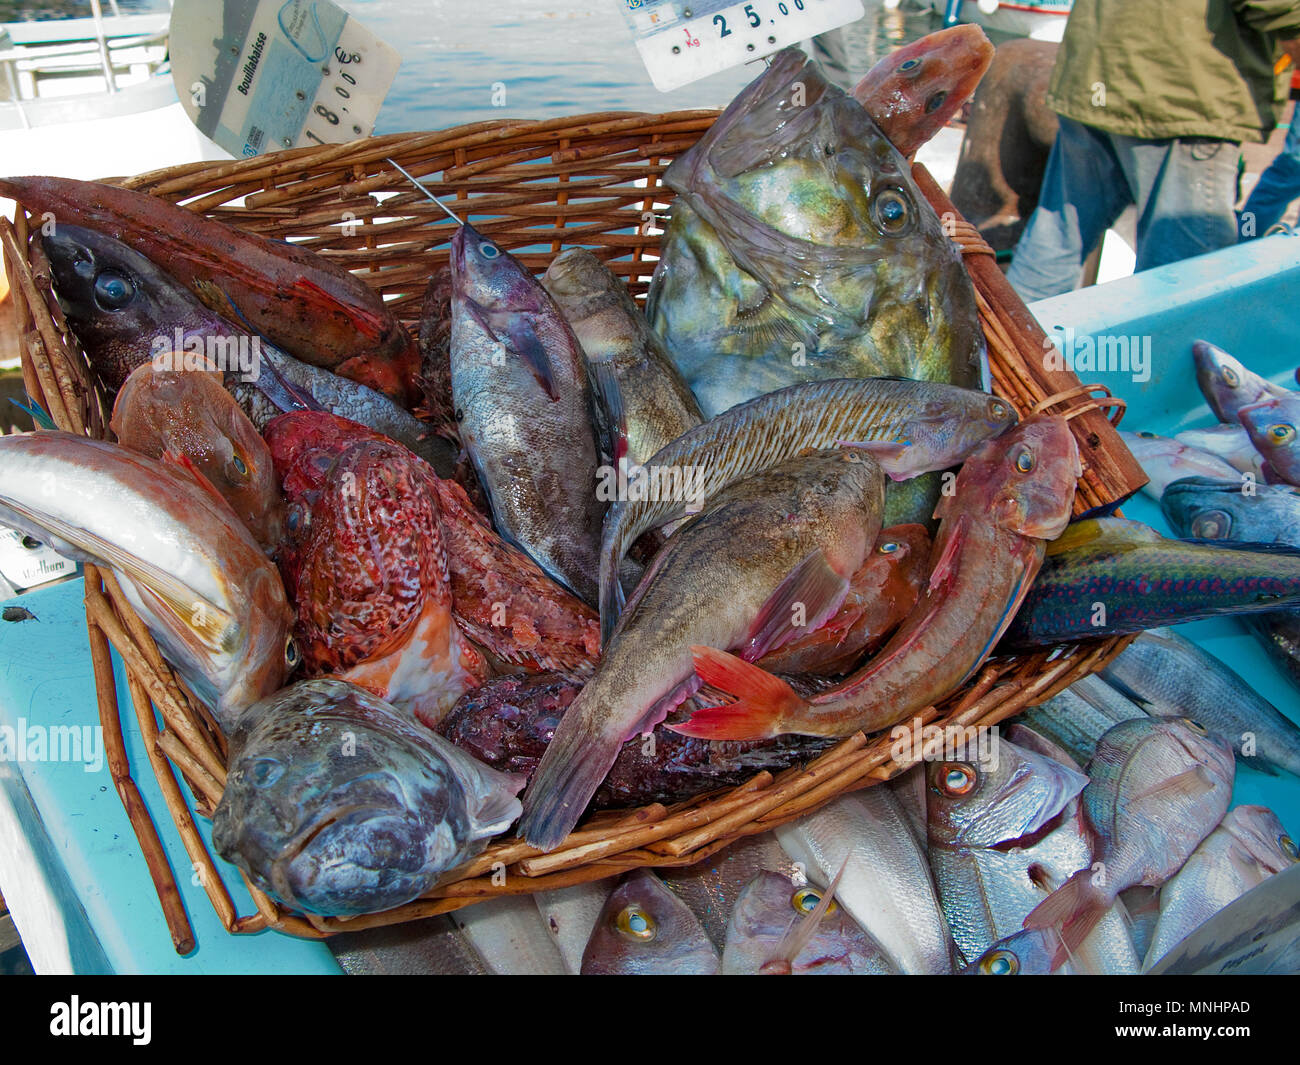 Fang des Tages, frischer Fisch am Hafen Vieux Port, Marseille, Bouches-du-Rhône der Region Provence-Alpes-Côte d'Azur, Südfrankreich, Frankreich, Europa Stockfoto